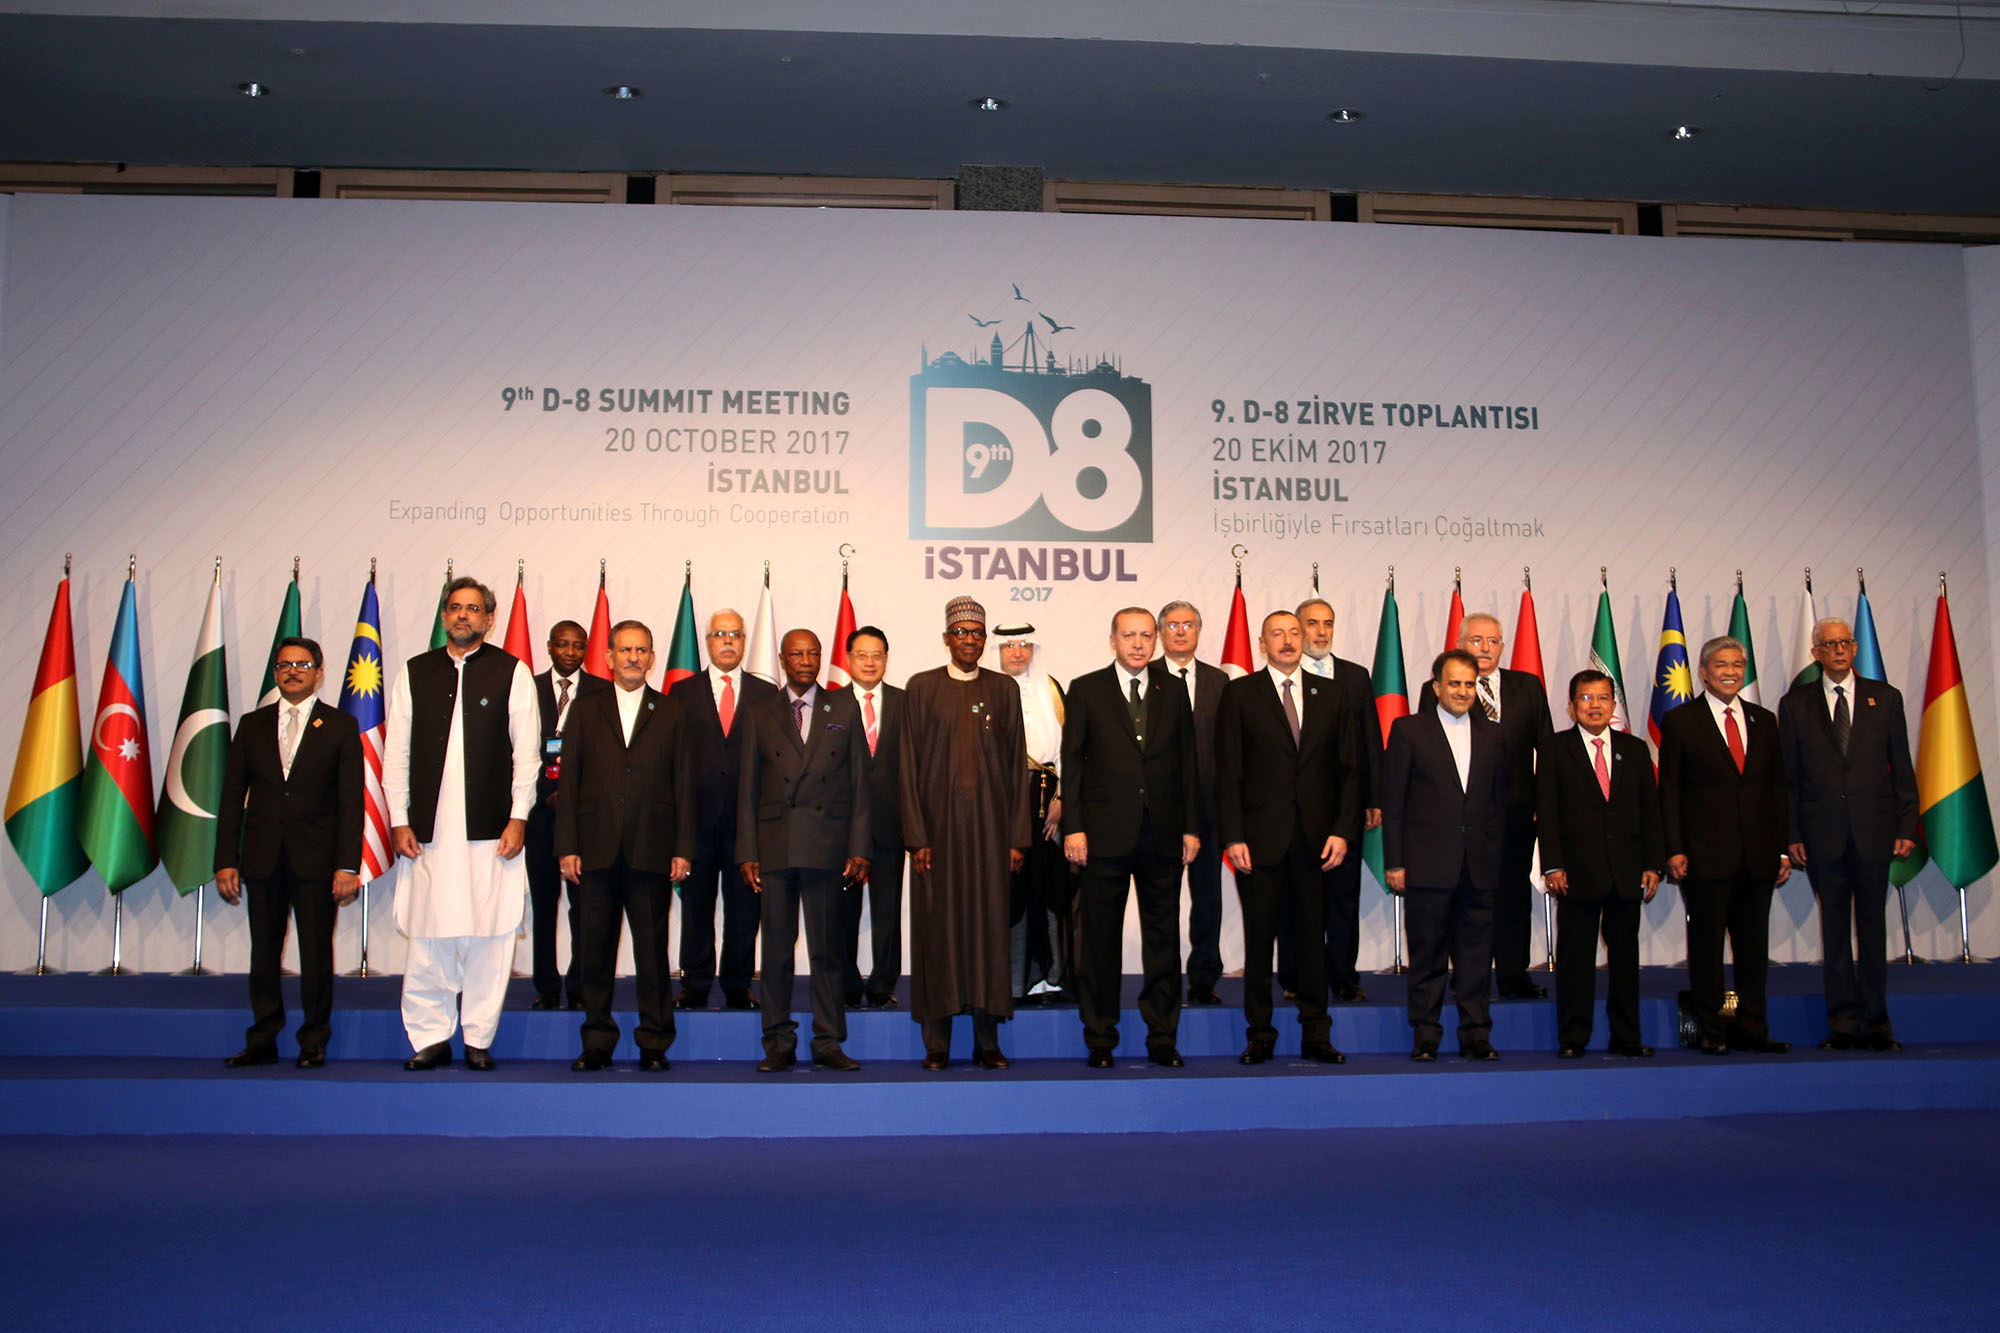 ایران، میزبان اجلاس اتاق کشورهای اسلامی و D8 خواهد بود